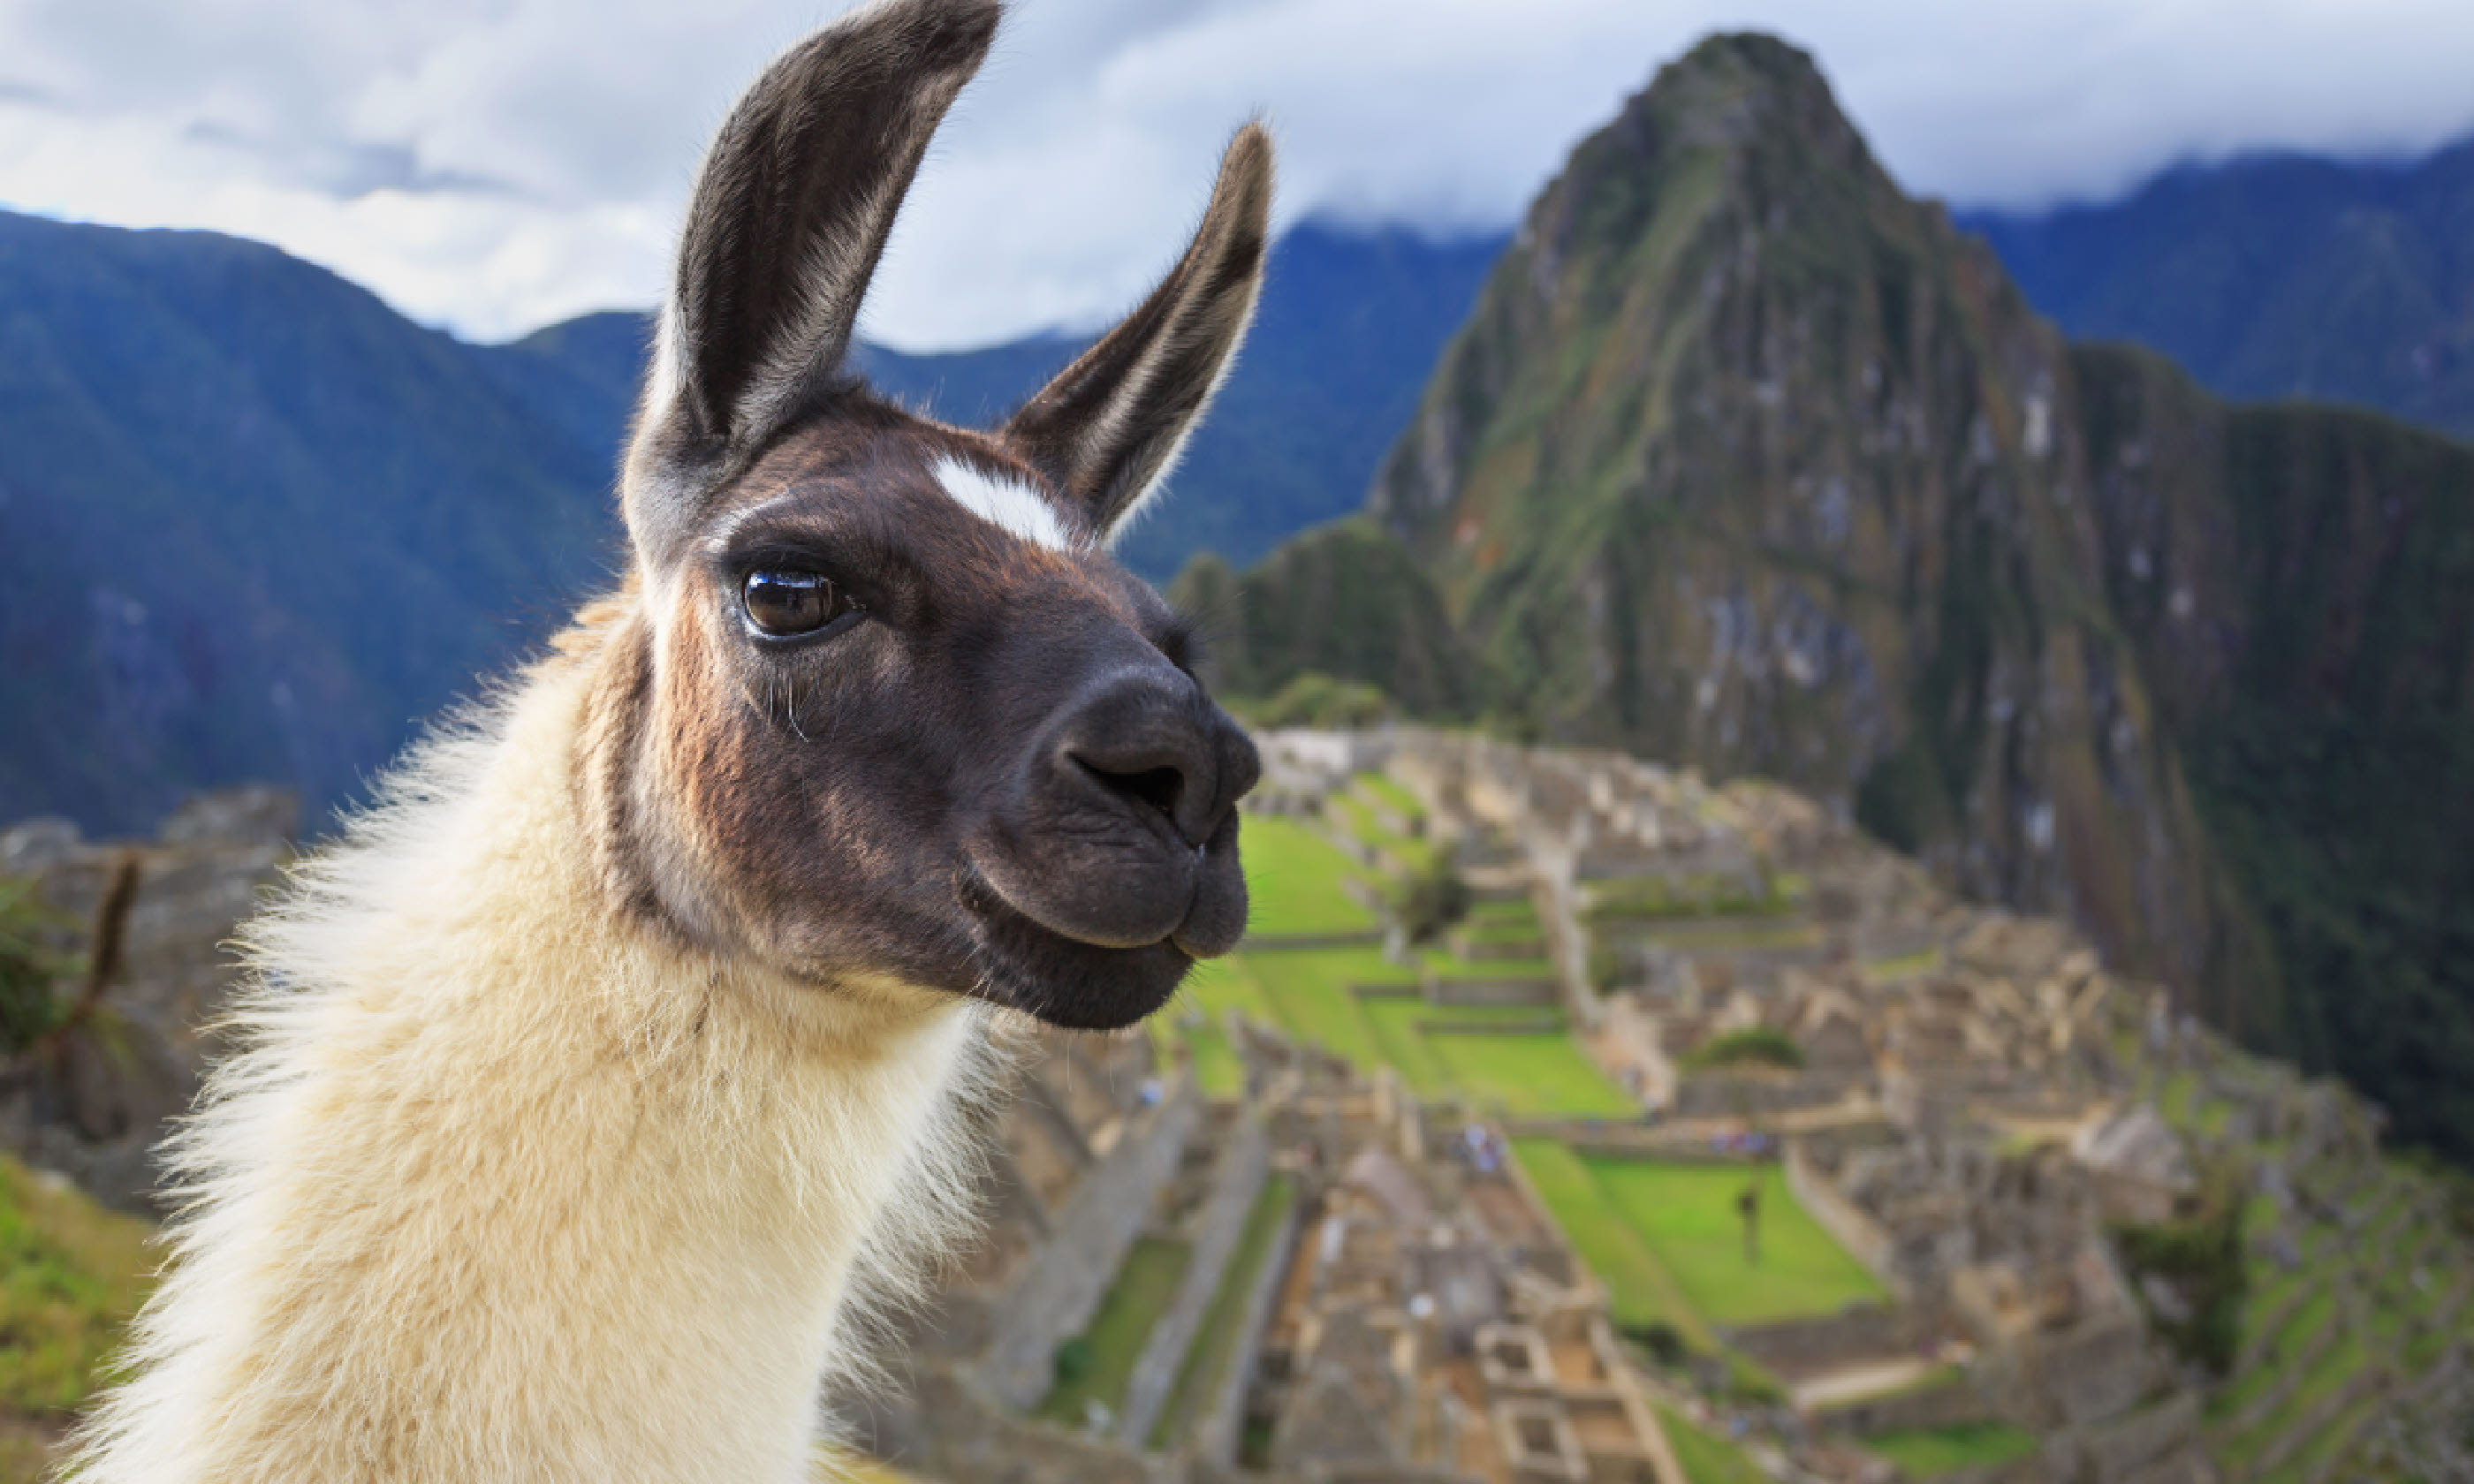 Machu Picchu, Peru (Shutterstock)